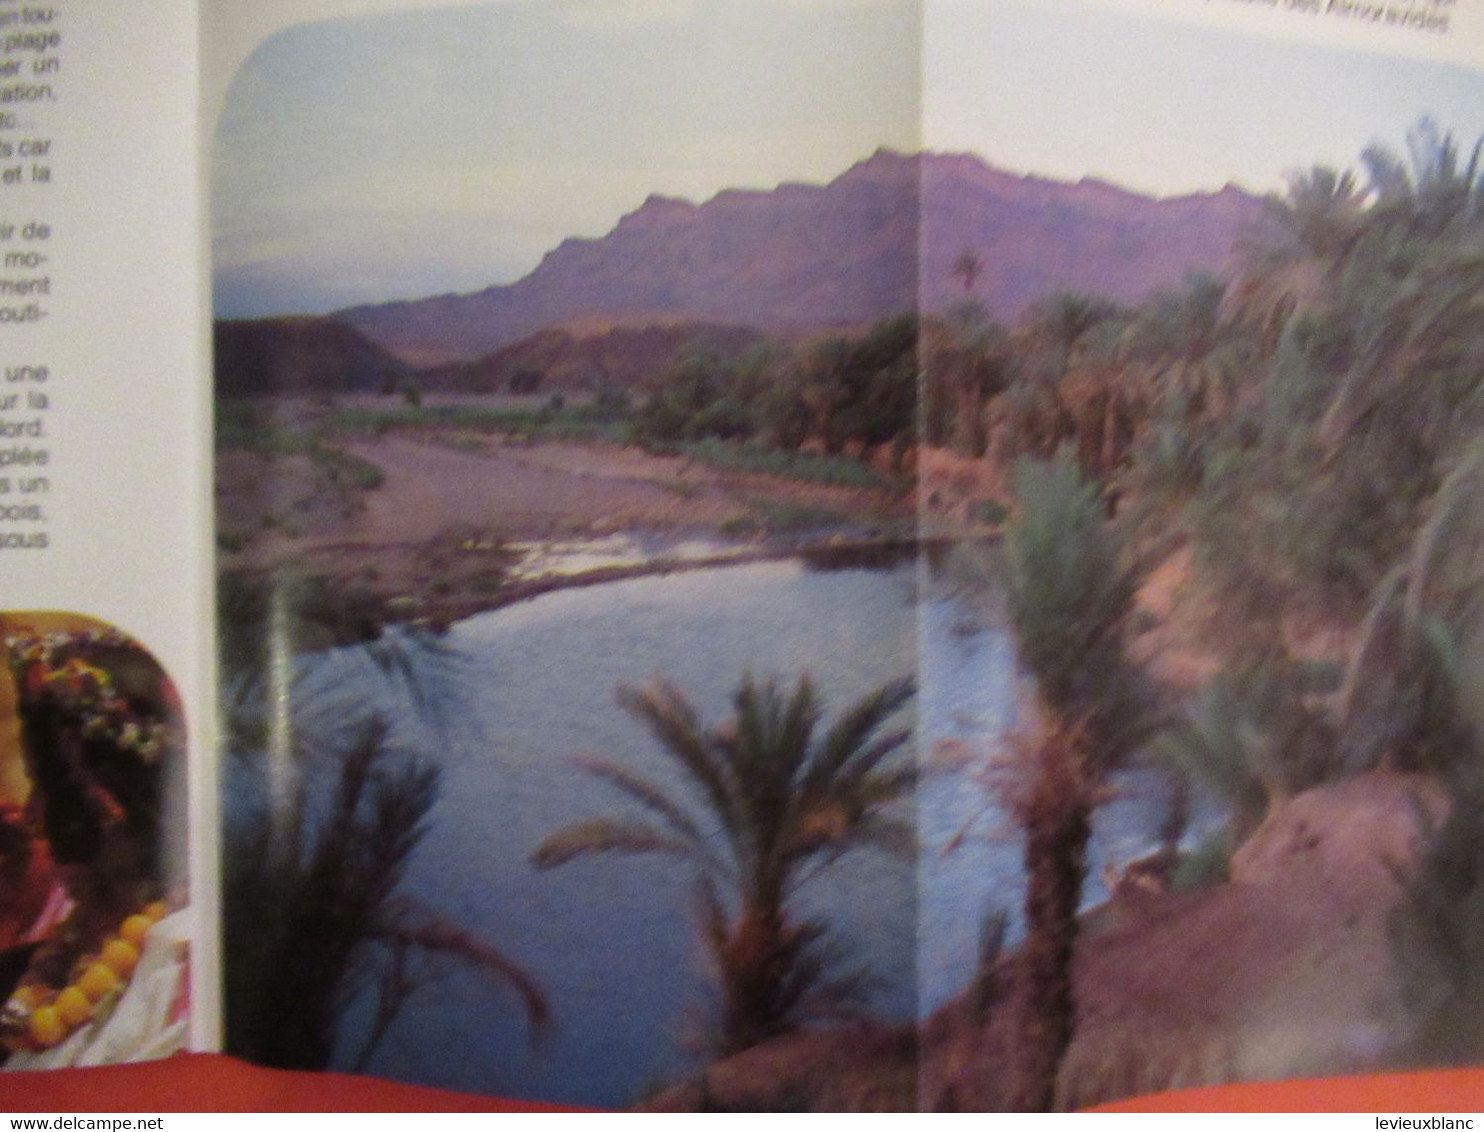 Document ancien/MAROC/Route des KASBAHS /Carte  et présentation illustrée/ Office  Marocain du Tourisme/1989   PGC464